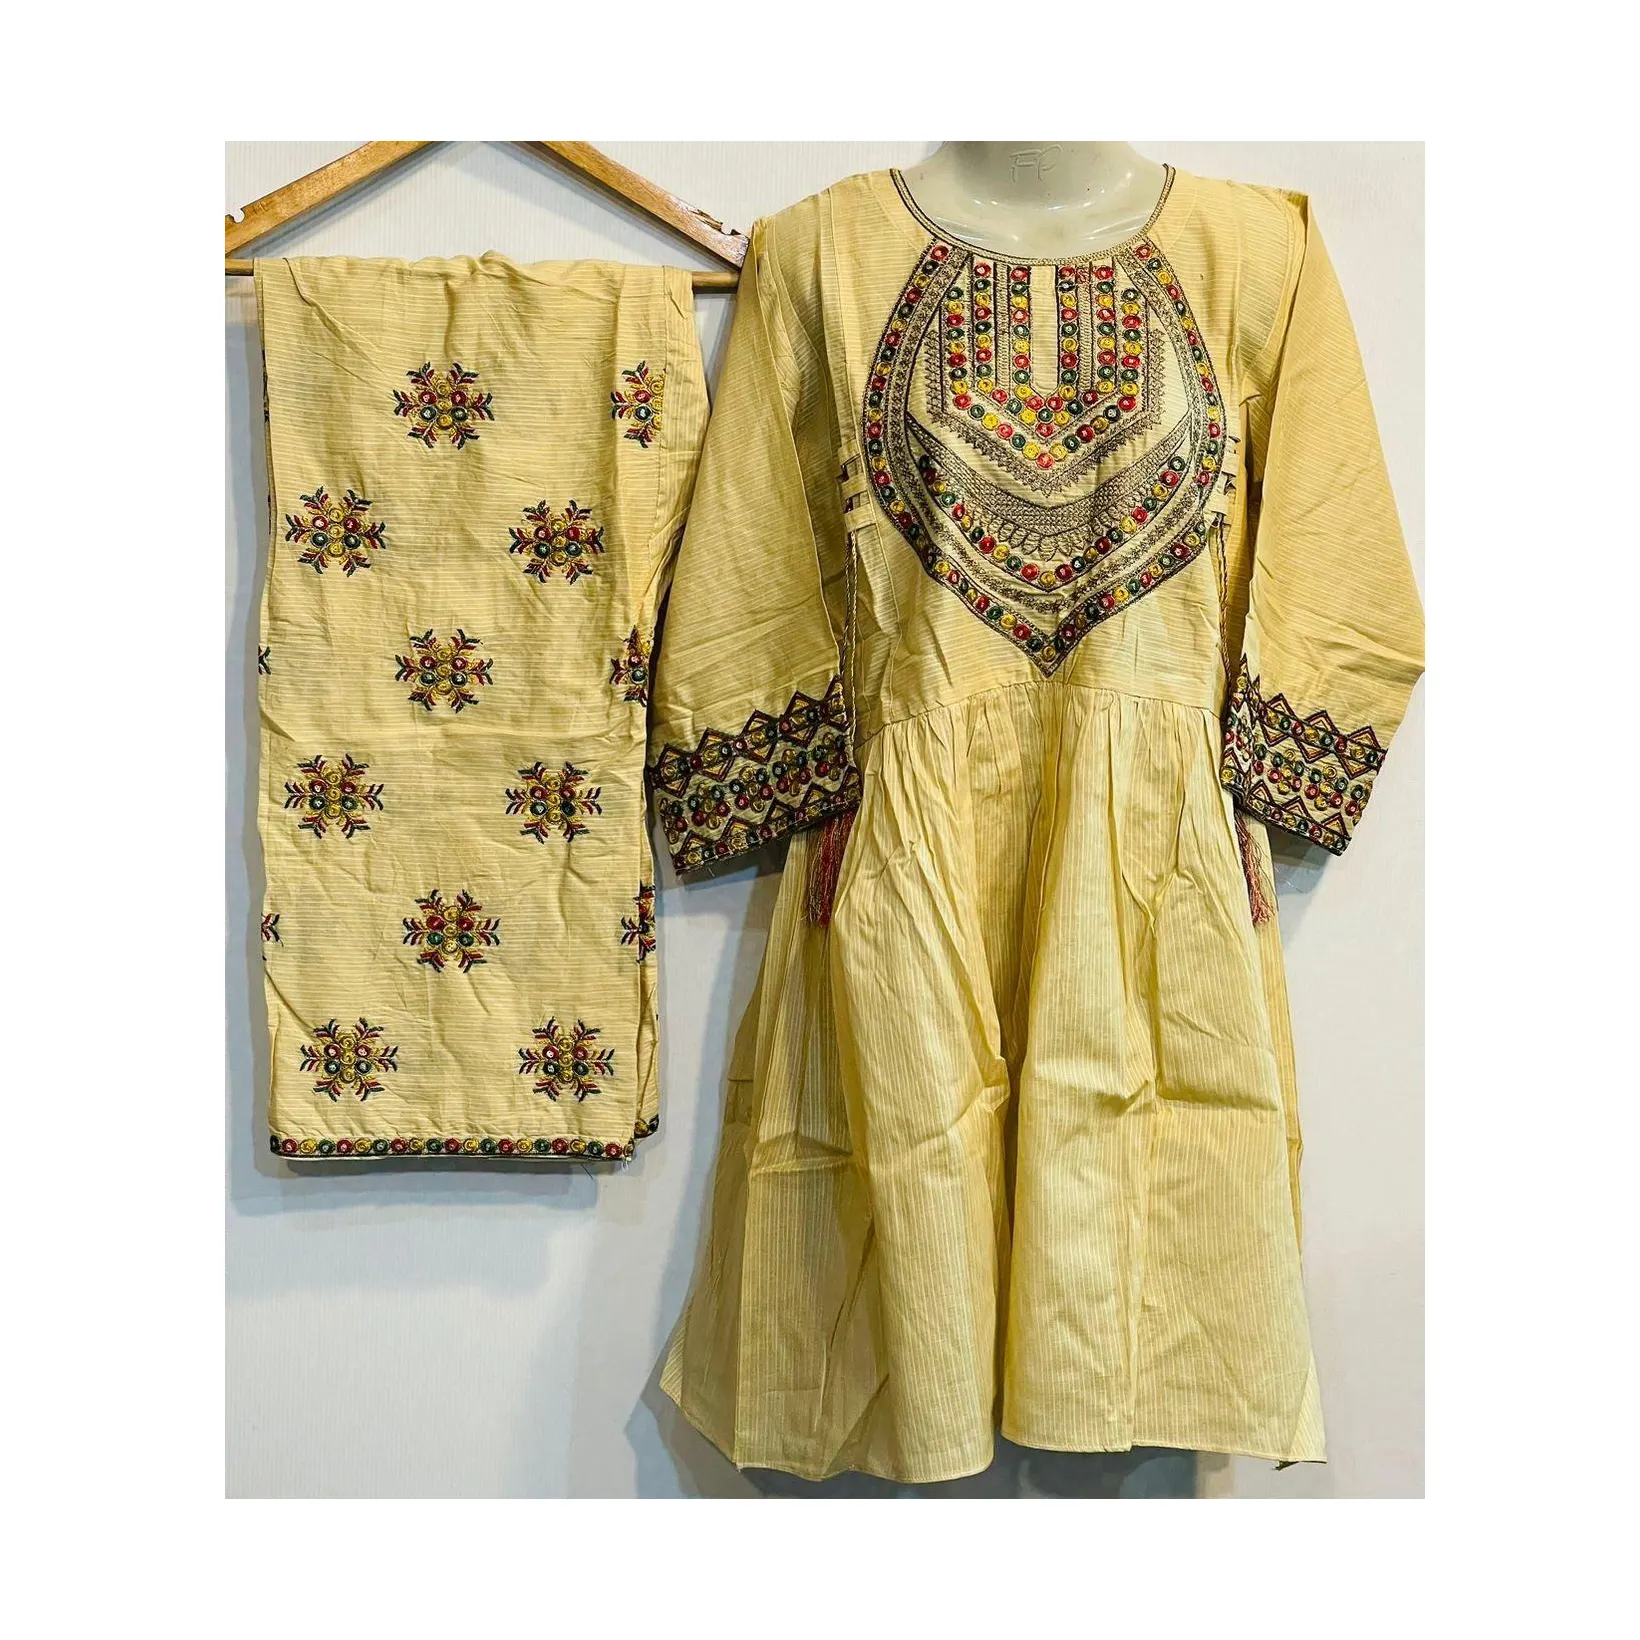 ผลิตภัณฑ์ใหม่สำหรับผู้หญิงสนามหญ้า/ปากีสถาน dupatta สงคราม Kameez/Shalwar kameez dupatta